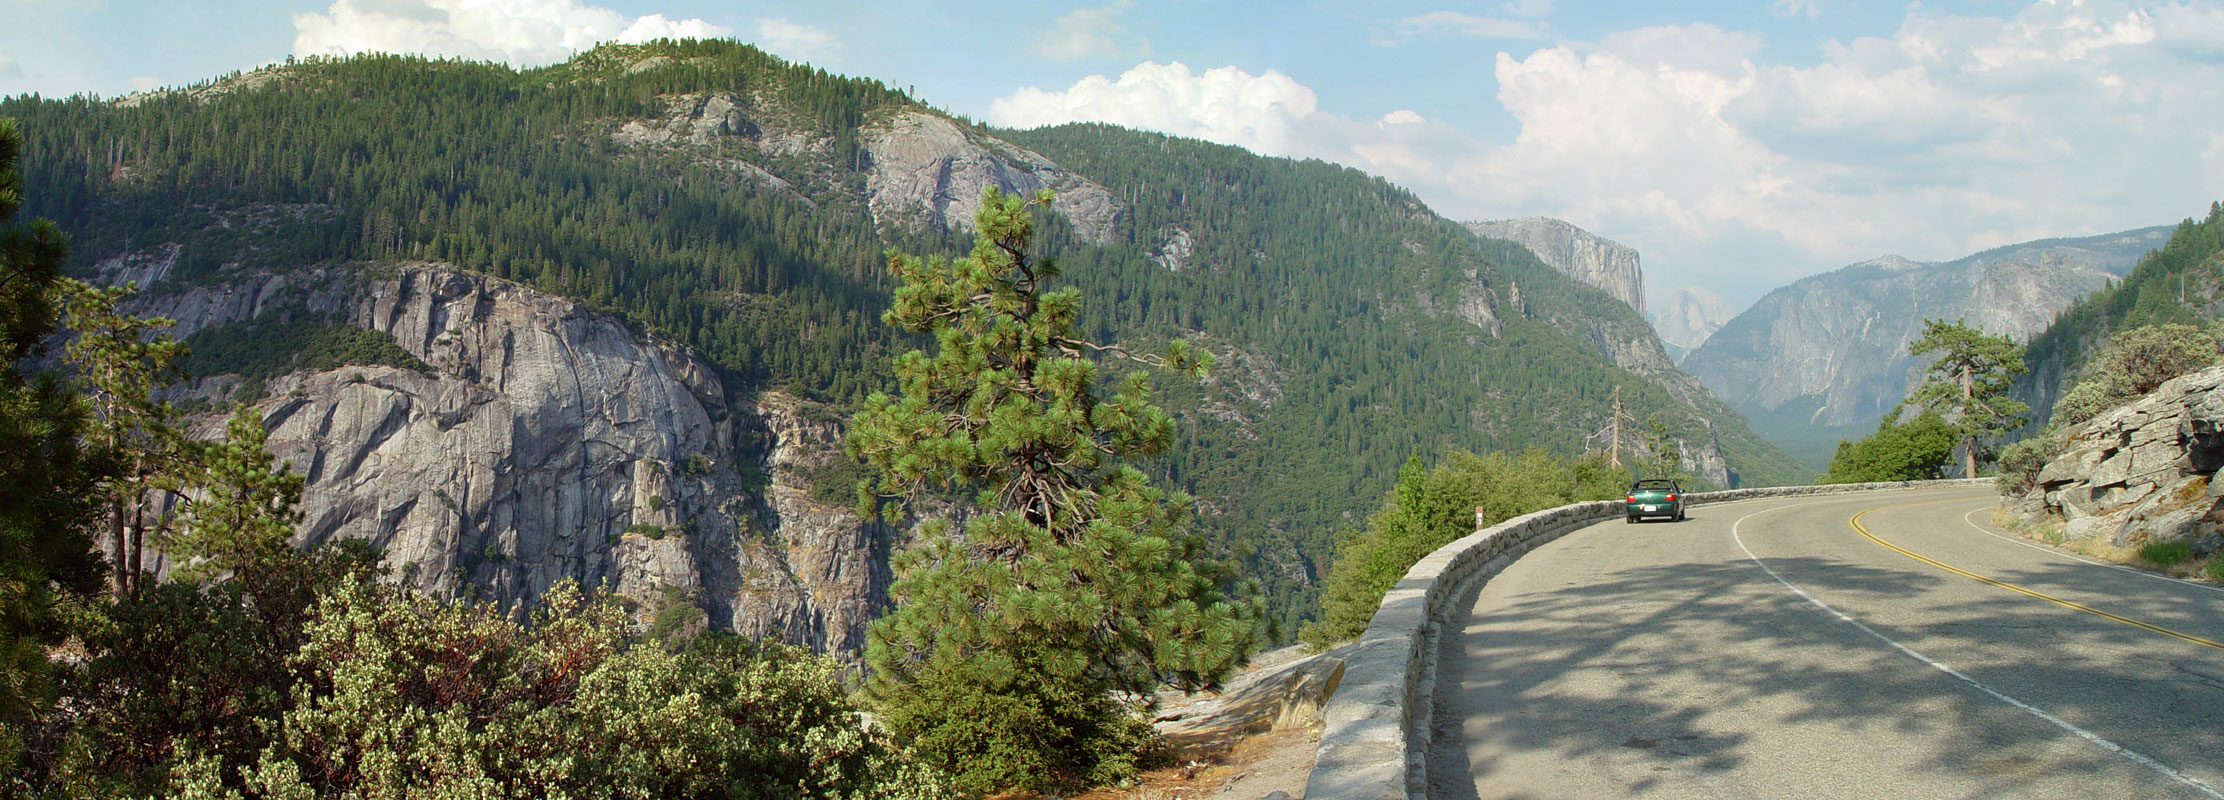 Yosemite, California near Tunnel View